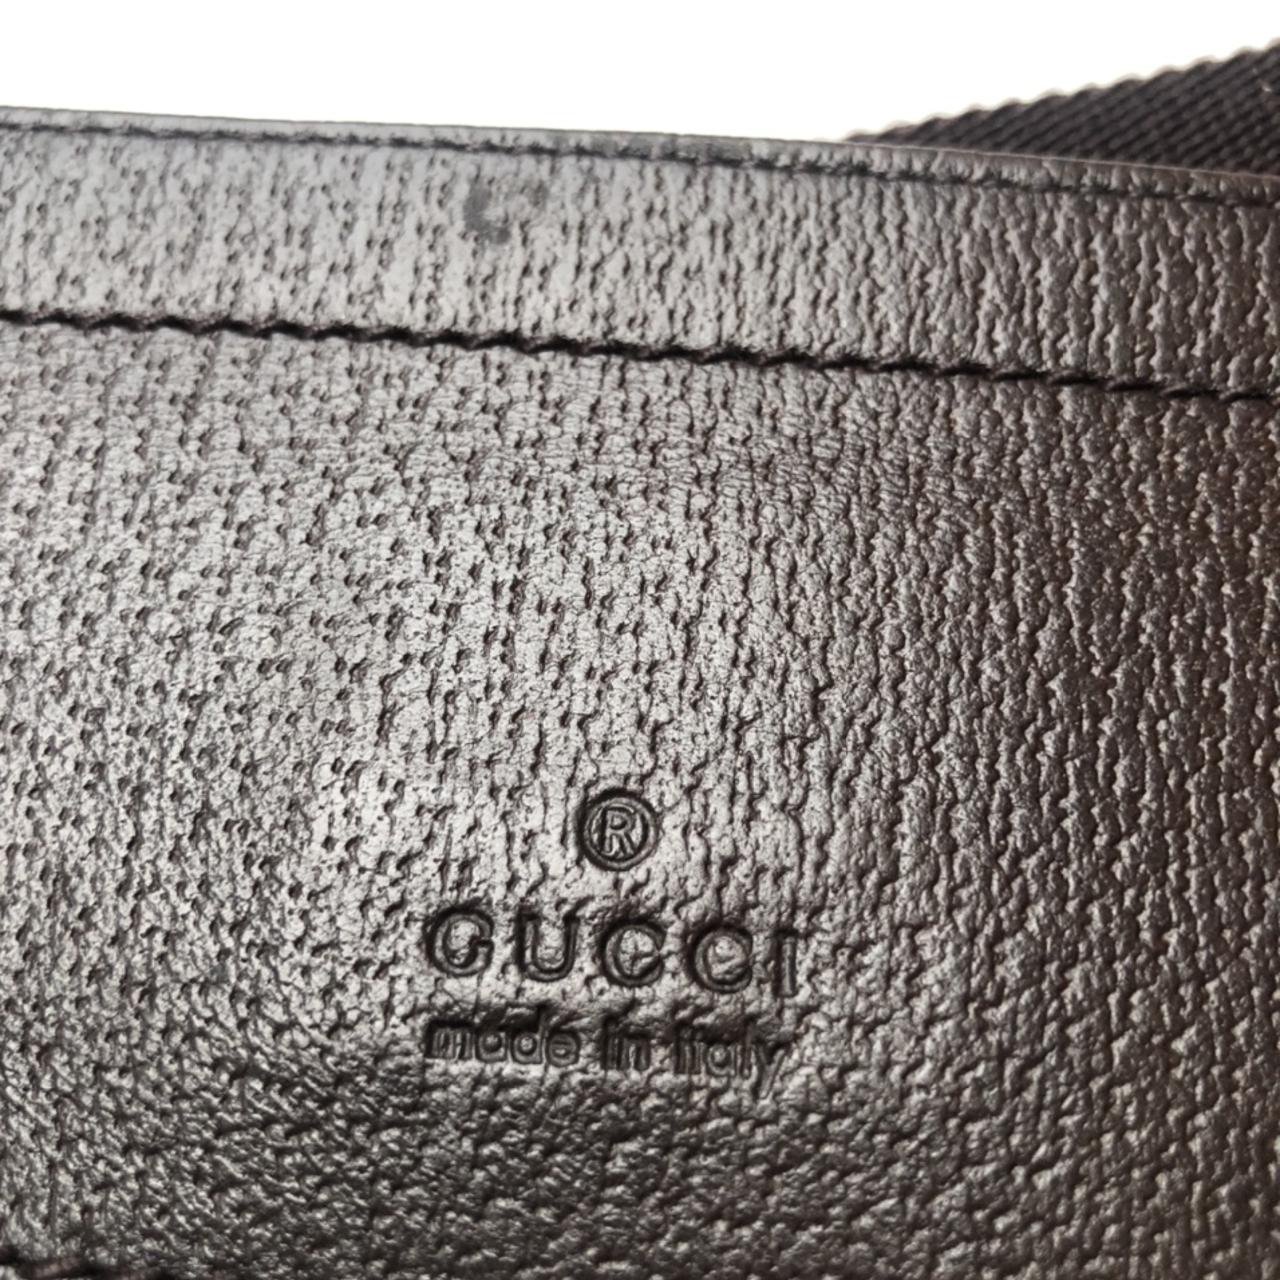 Gucci Belt Bag Vintage Logo Black #Gucci DISCONTINUED - Depop